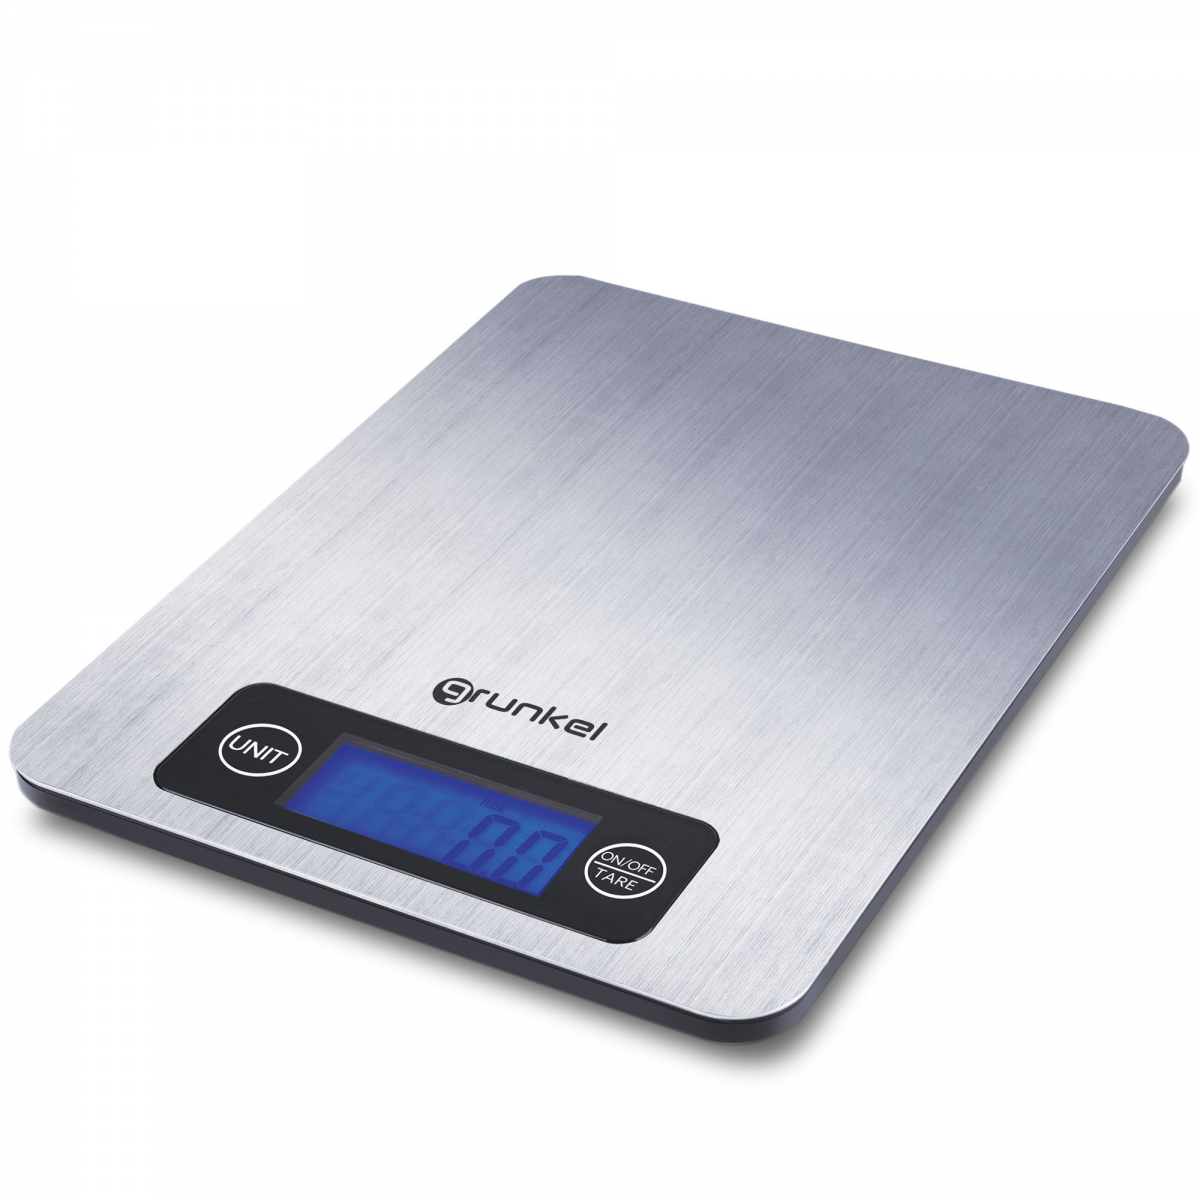 Báscula de cocina - DURONIC Duronic KS1080 Báscula cocina digital -  Pantalla LDC lectura dígitos fácil - Máx 10kg - Función tara, 10 kg, Gris